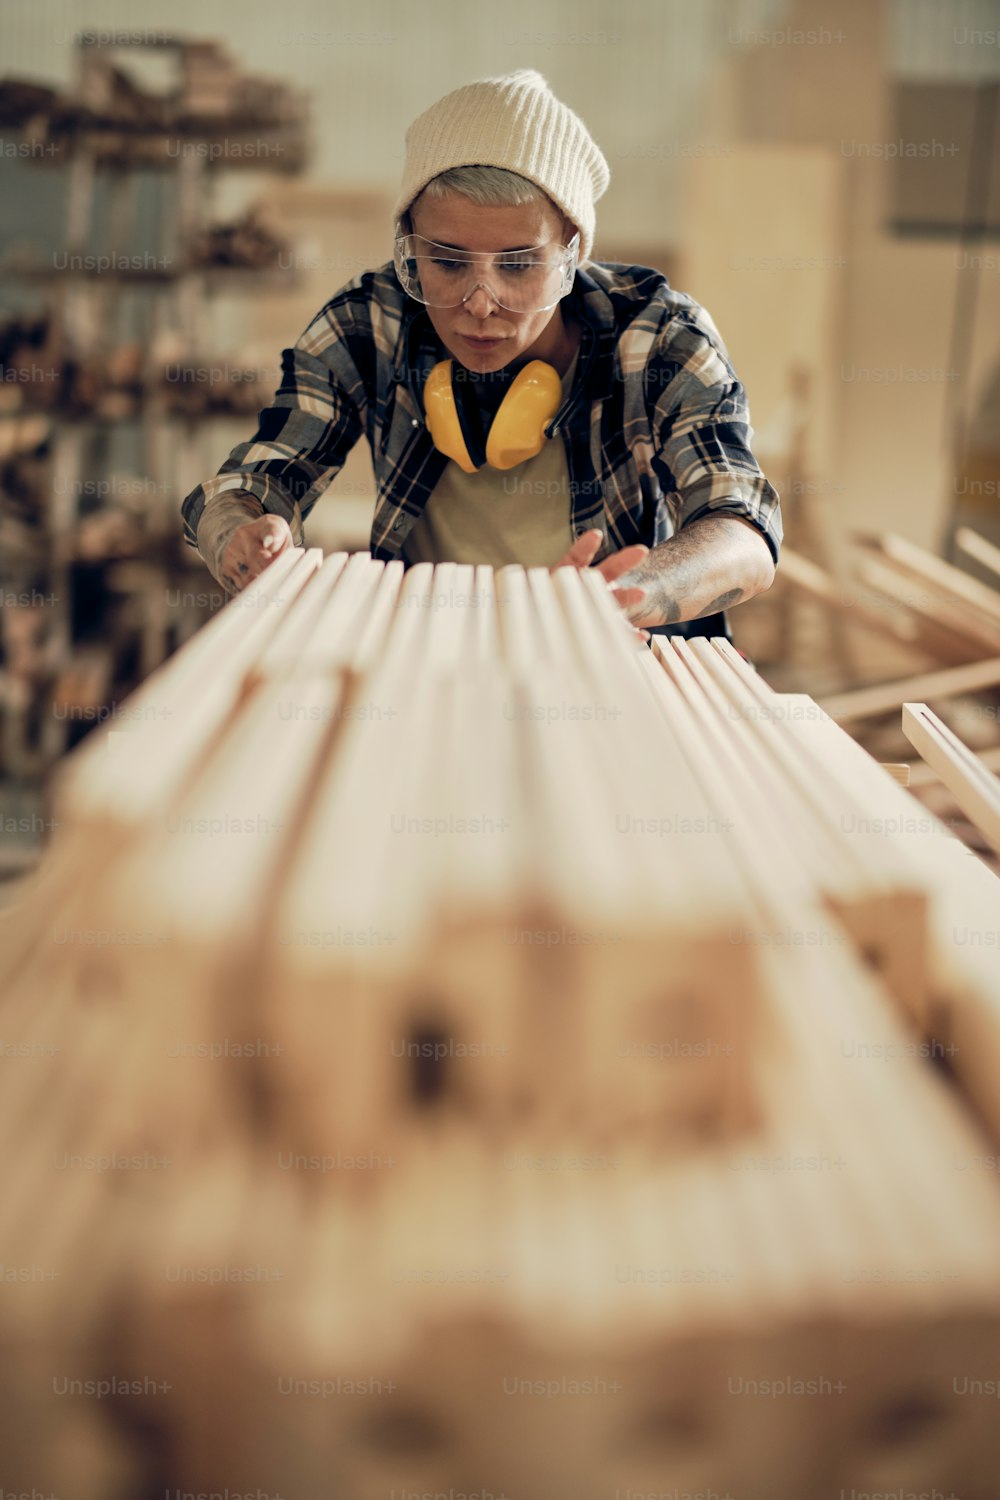 Ritratto di forte falegname femminile che lavora con legno, accatasta e livella legname in catasta